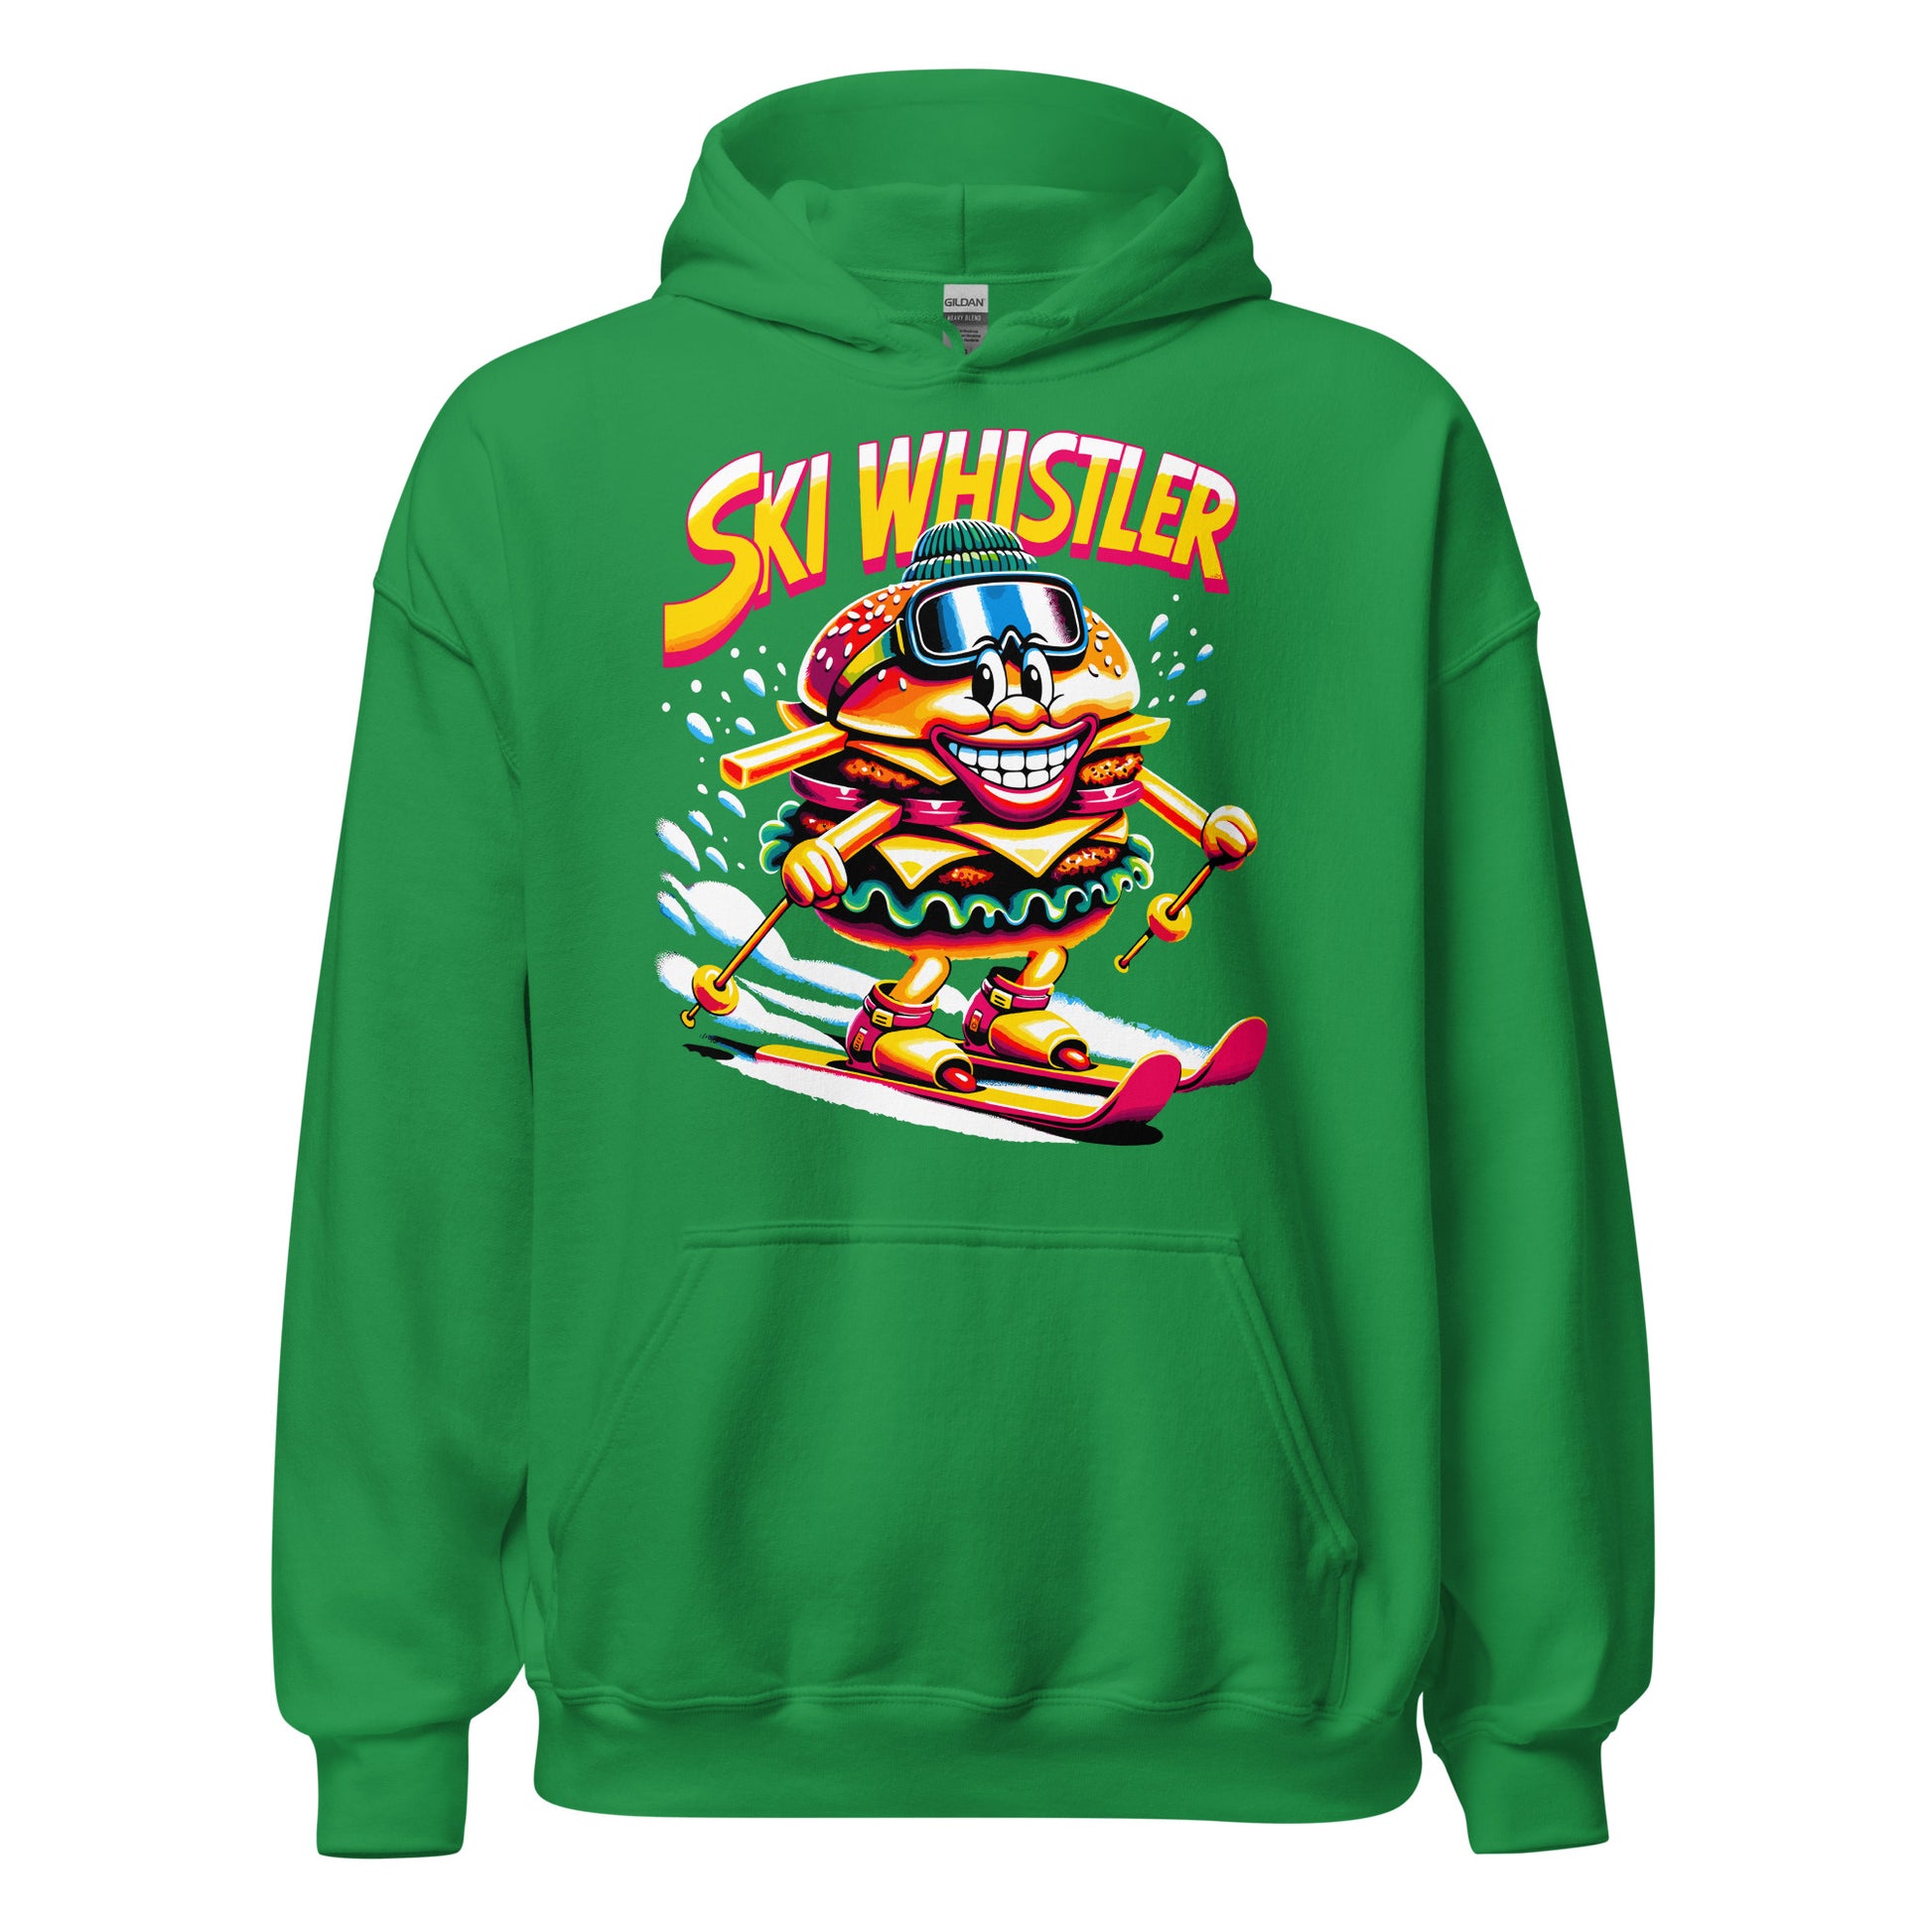 Ski Whistler Hamburger Man Hoodie printed by Whistler Shirts